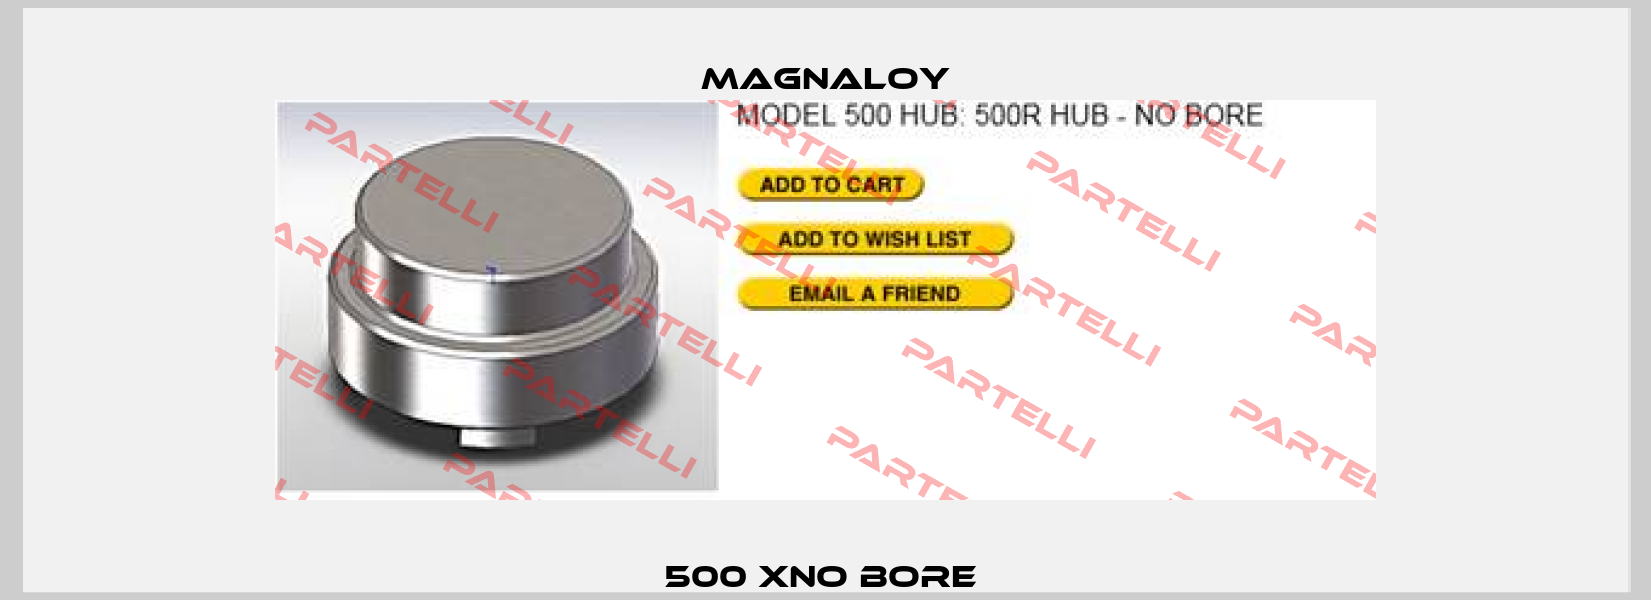 500 XNO BORE  Magnaloy